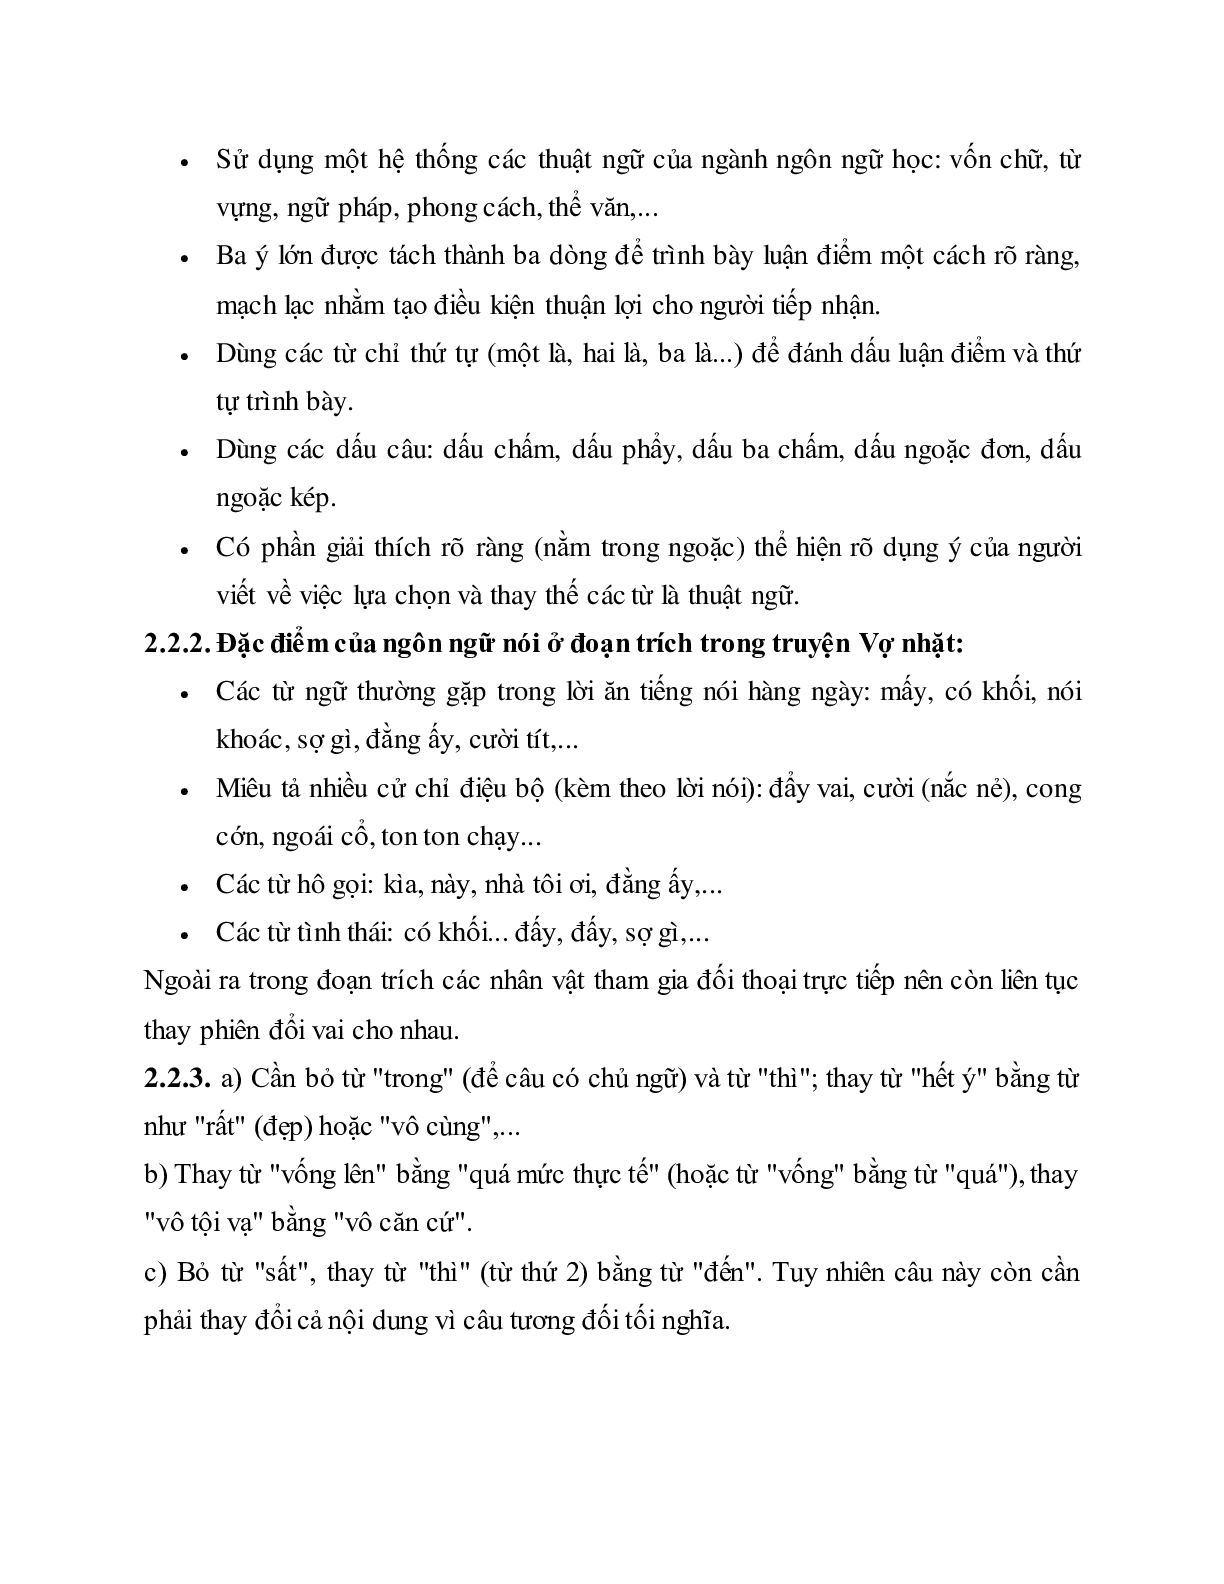 Soạn bài Đặc điểm của ngôn ngữ nói và ngôn ngữ viết - ngắn nhất Soạn văn 10 (trang 4)